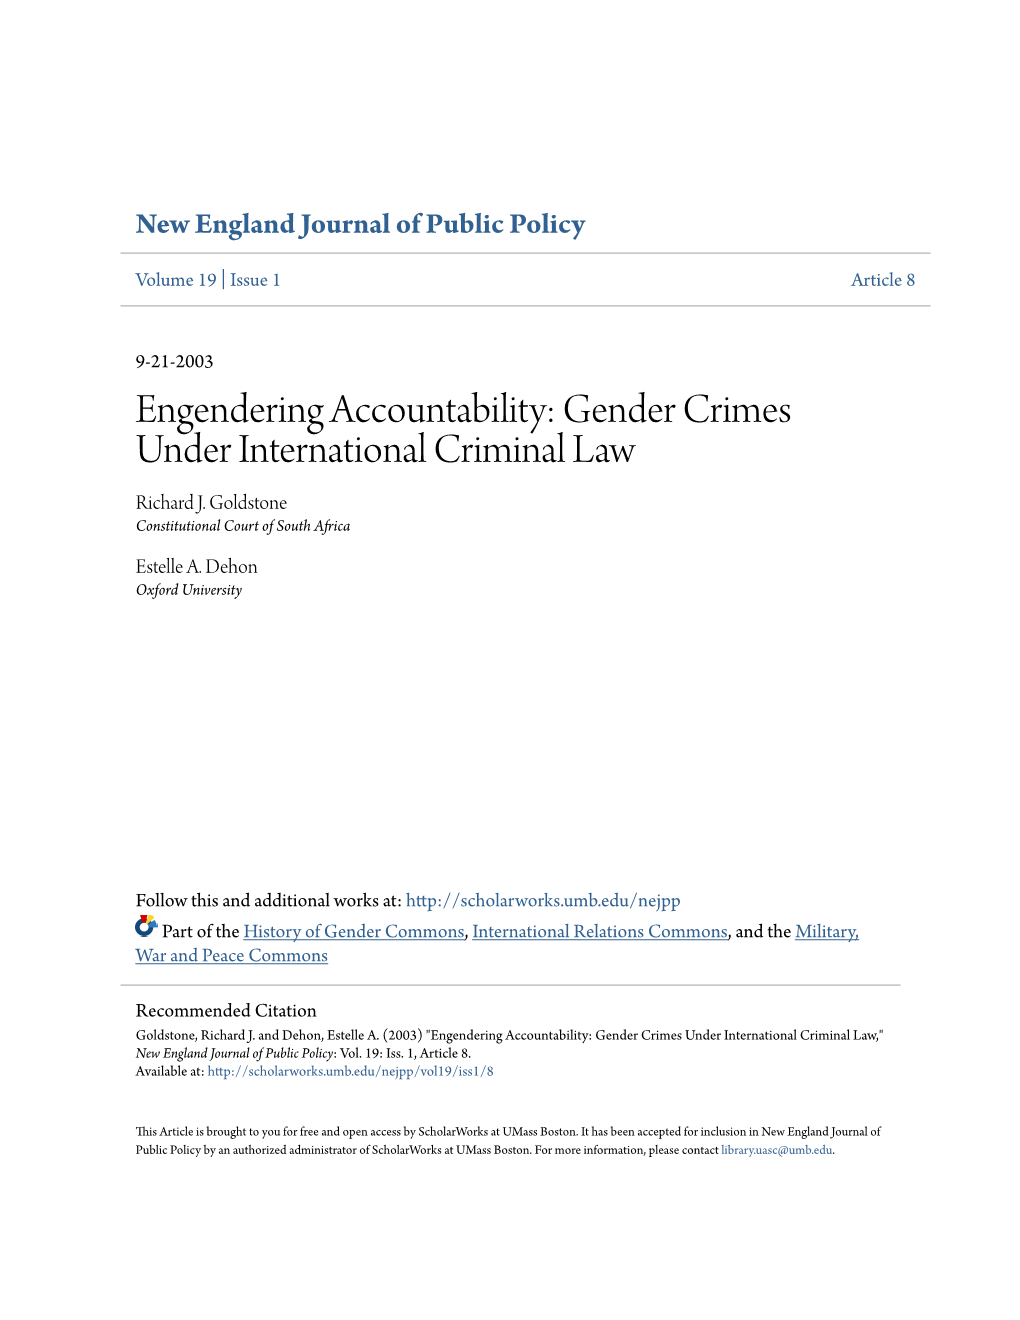 Gender Crimes Under International Criminal Law Richard J